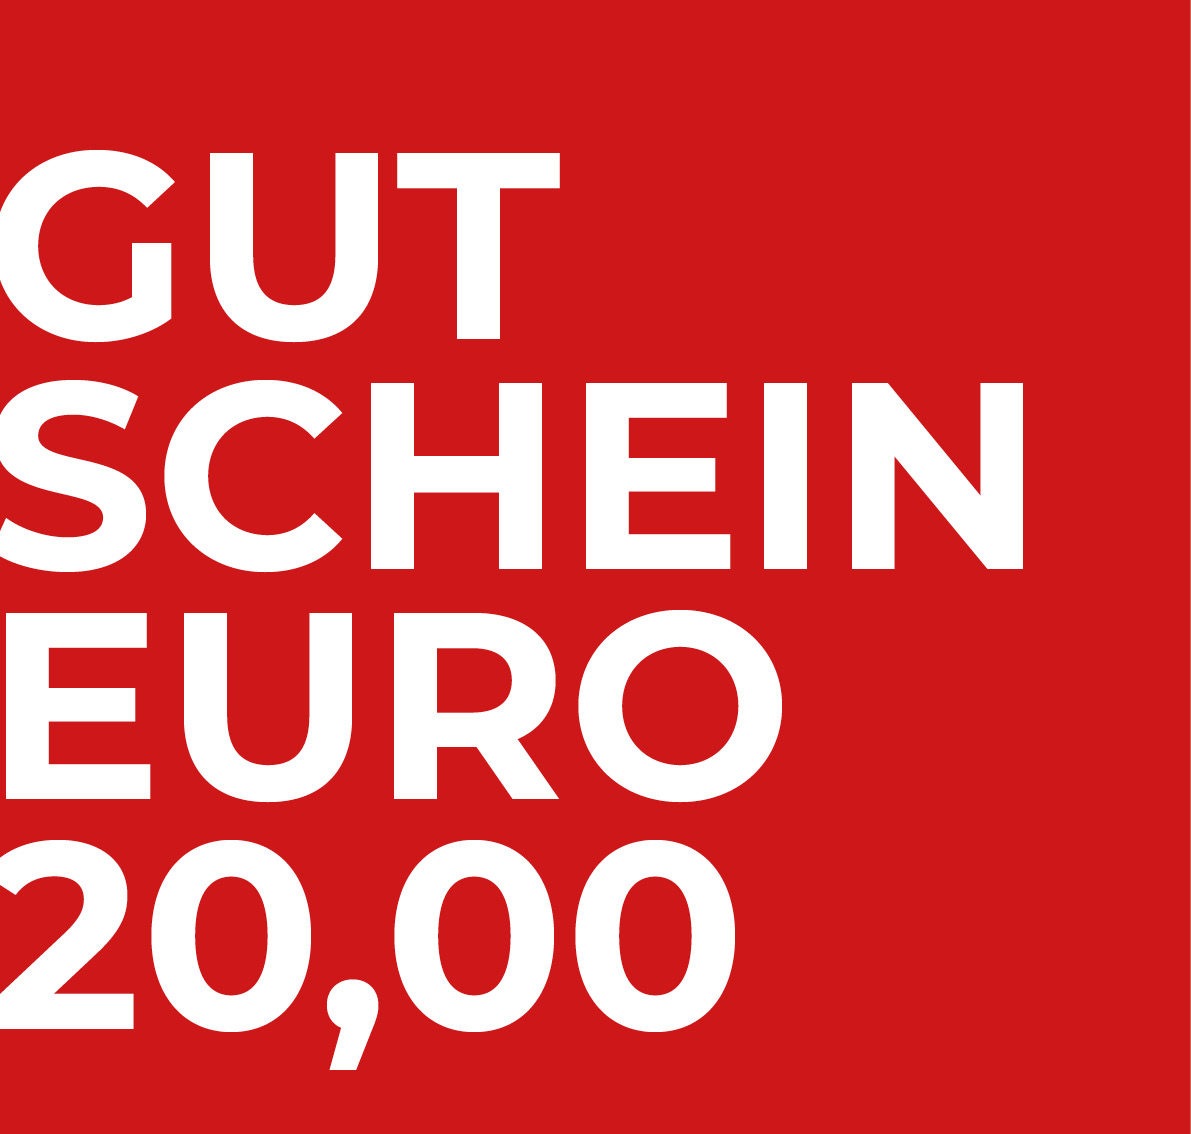 Gutschein Euro 20,00